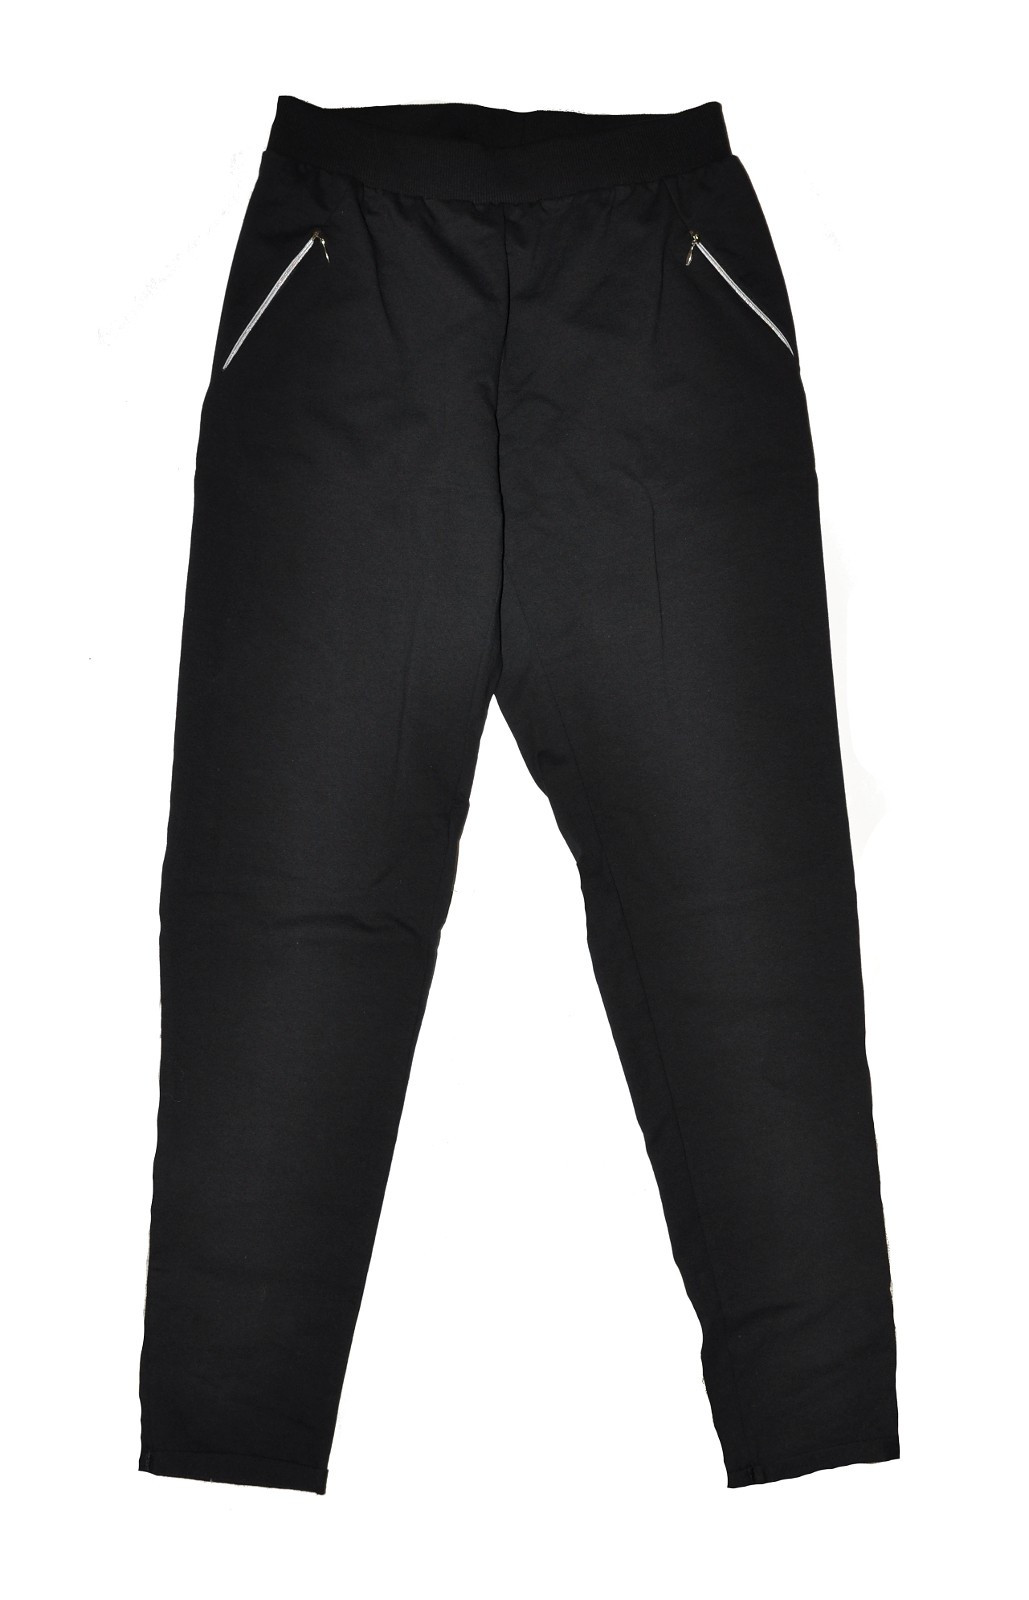 Dámské kalhoty De Lafense 604 Just černá XXL